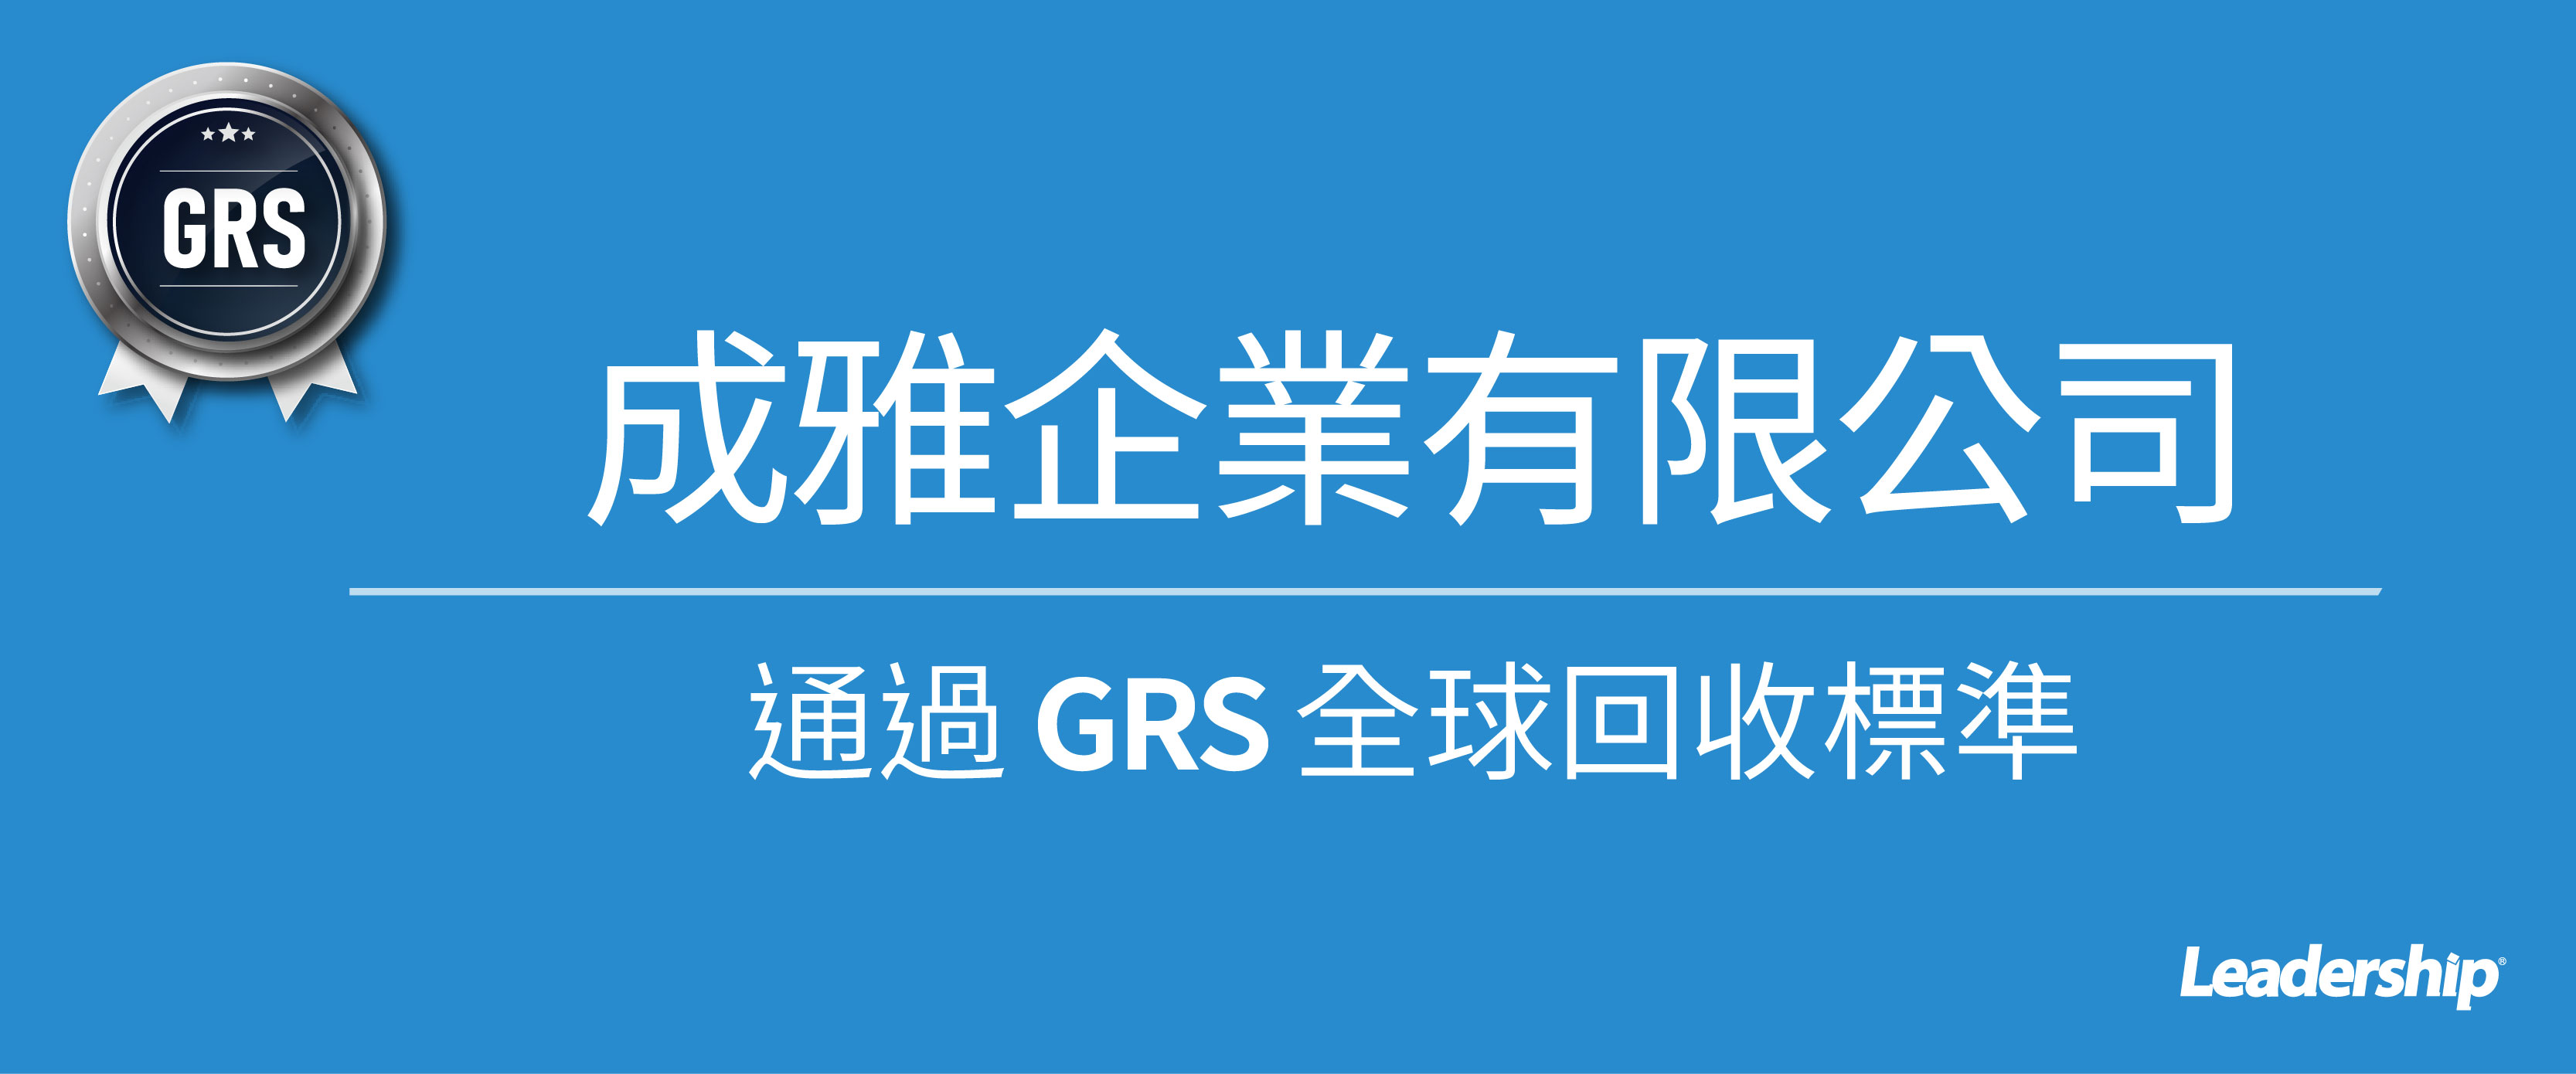 成雅企業通過 GRS 全球回收標準認證